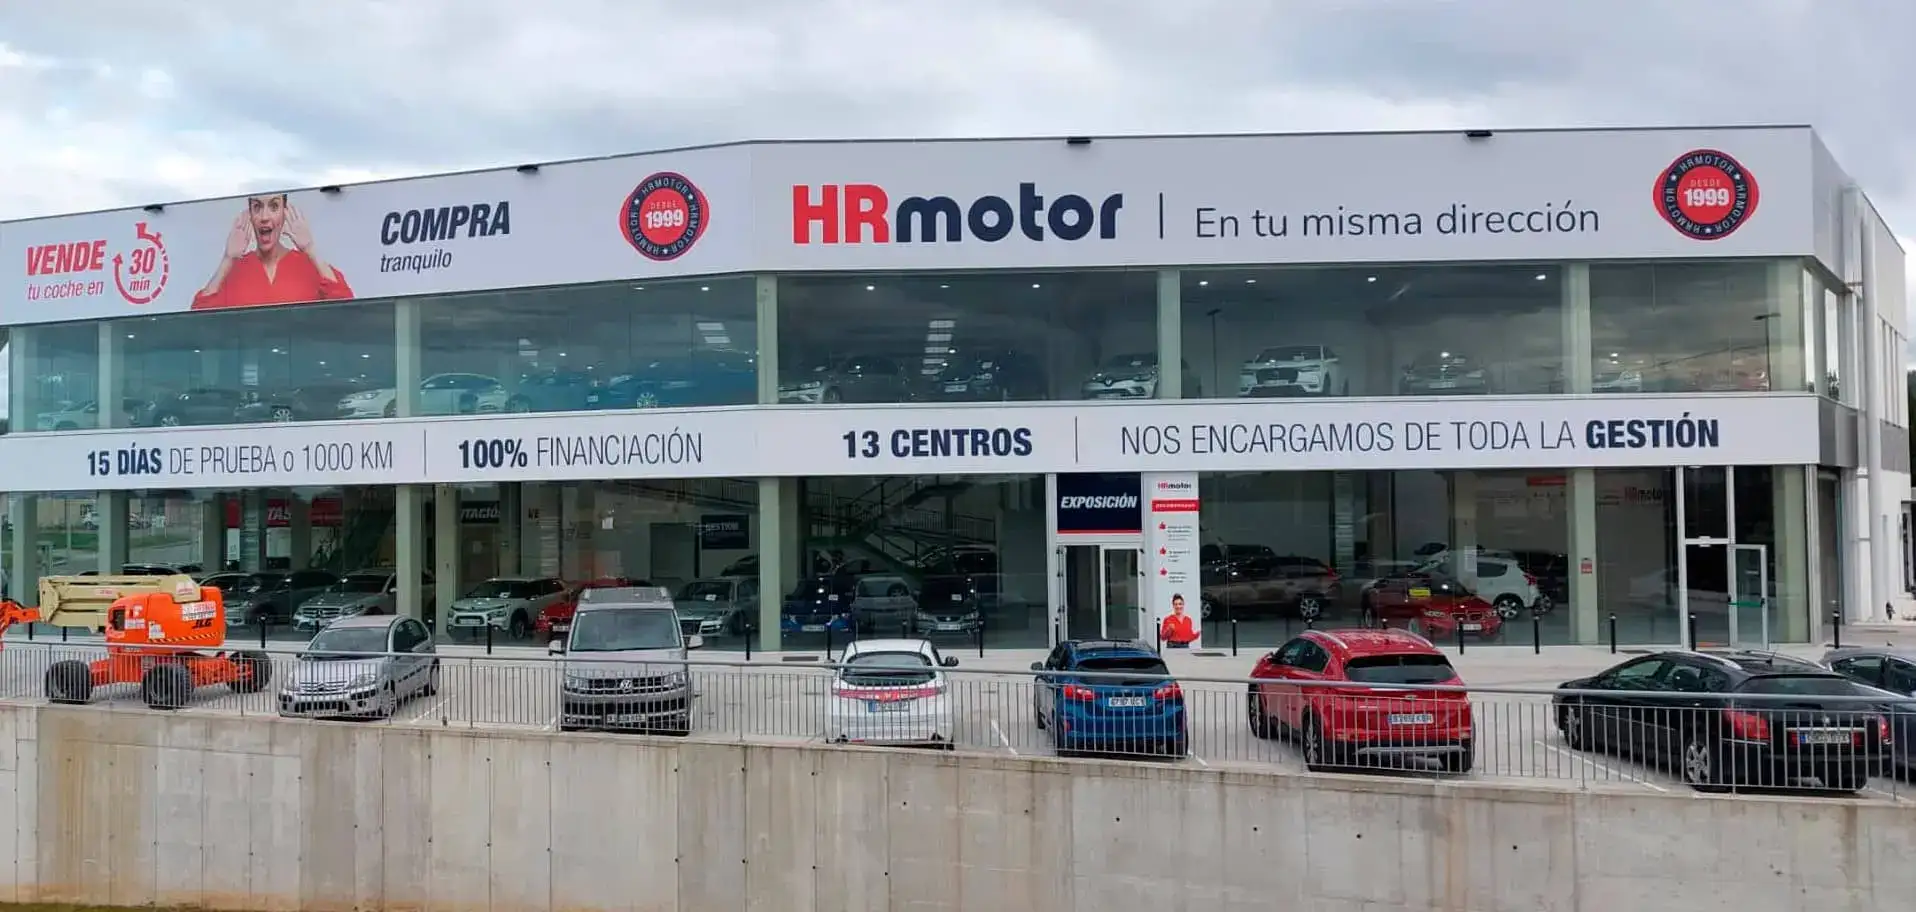 Concesionario de coches de segunda mano en Collado Villalba - HR Motor